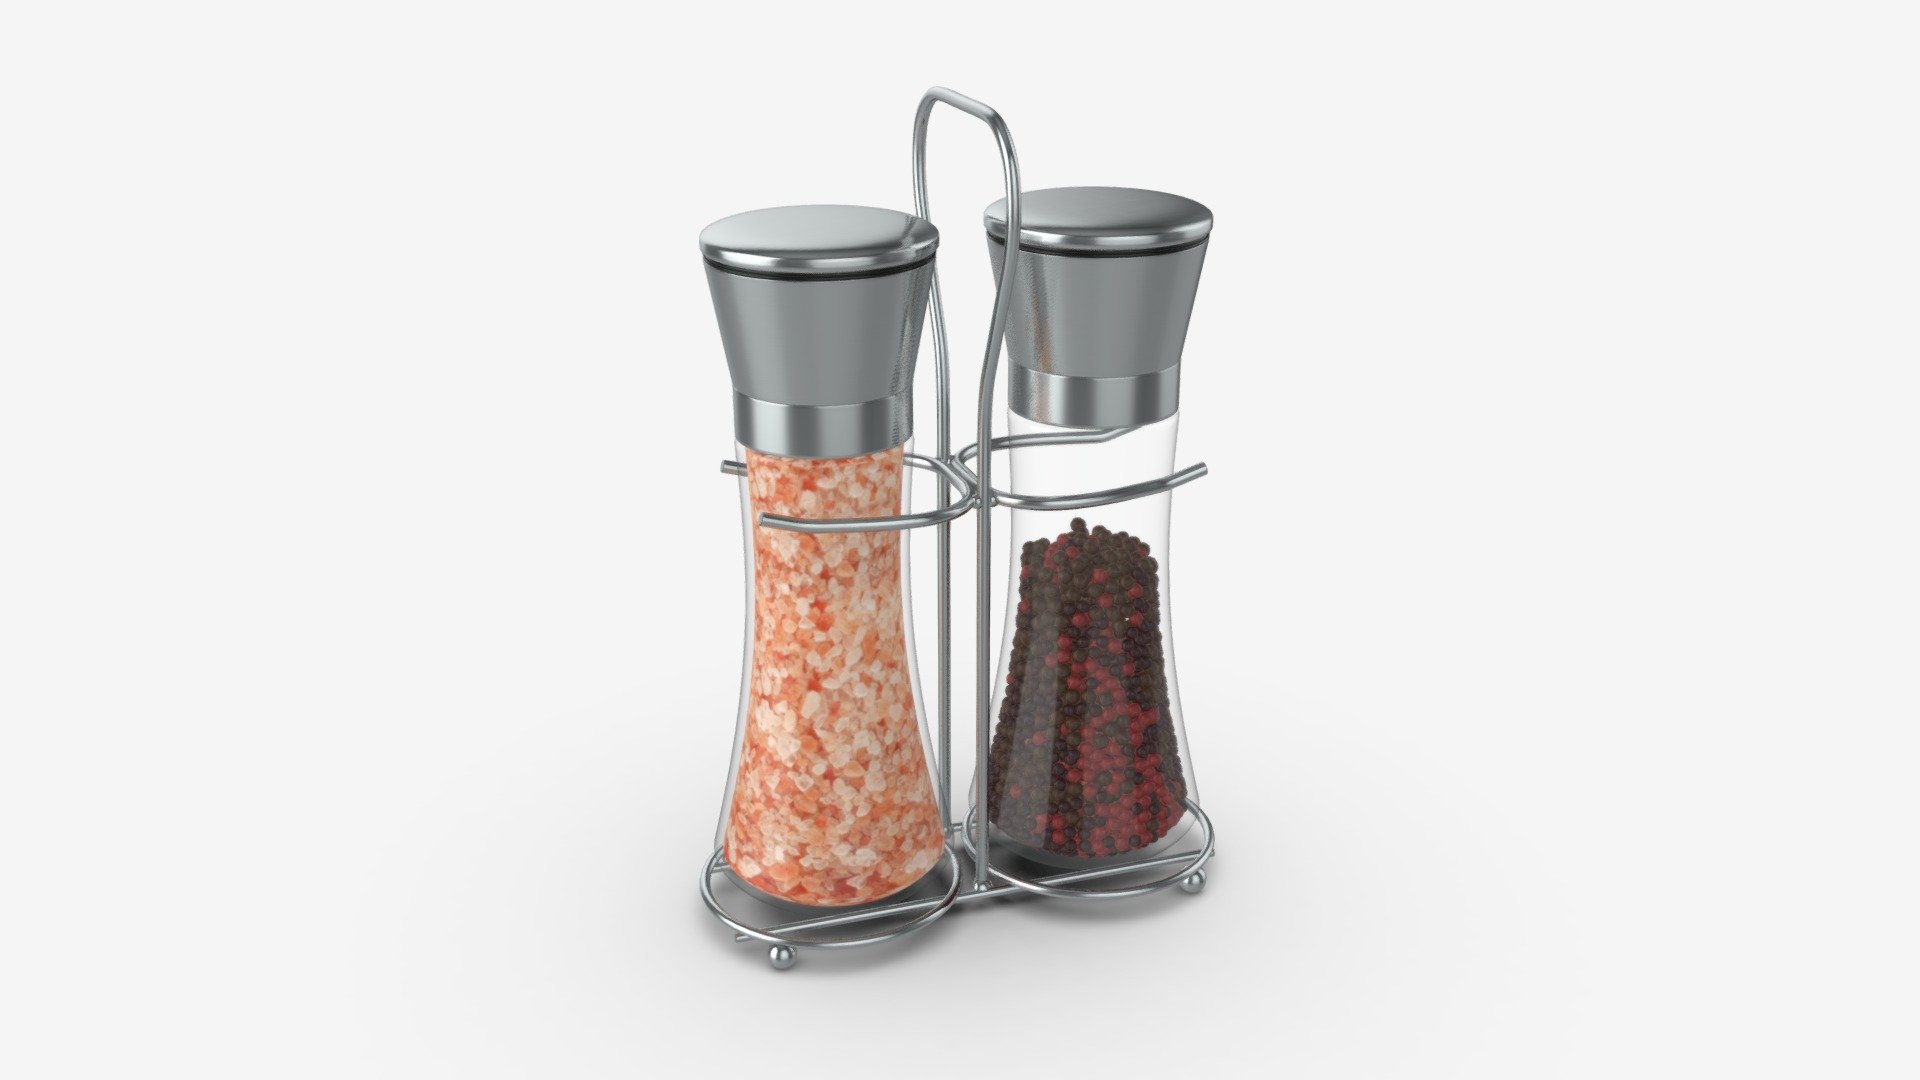 Salt and pepper grinder set 01 - Buy Royalty Free 3D model by HQ3DMOD (@AivisAstics) 3d model